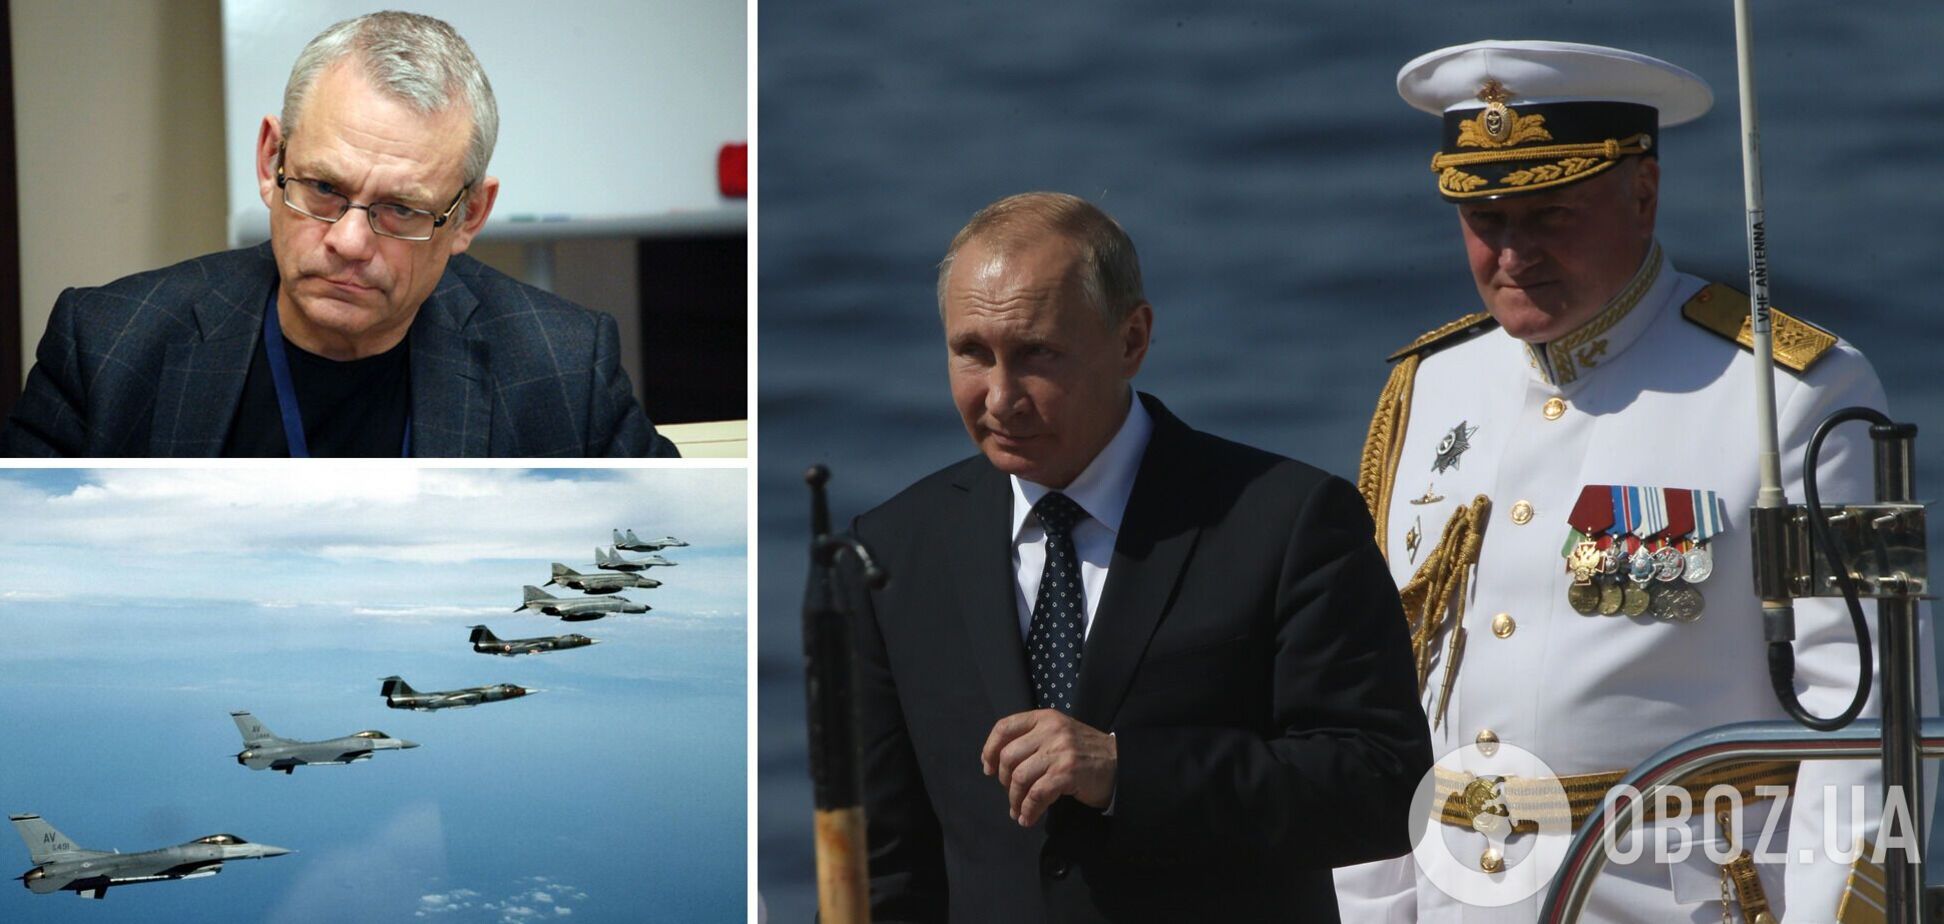 Захід може розчавити Росію, не піднімаючи в повітря літаки НАТО: бліцінтерв'ю з опозиціонером із РФ Яковенком